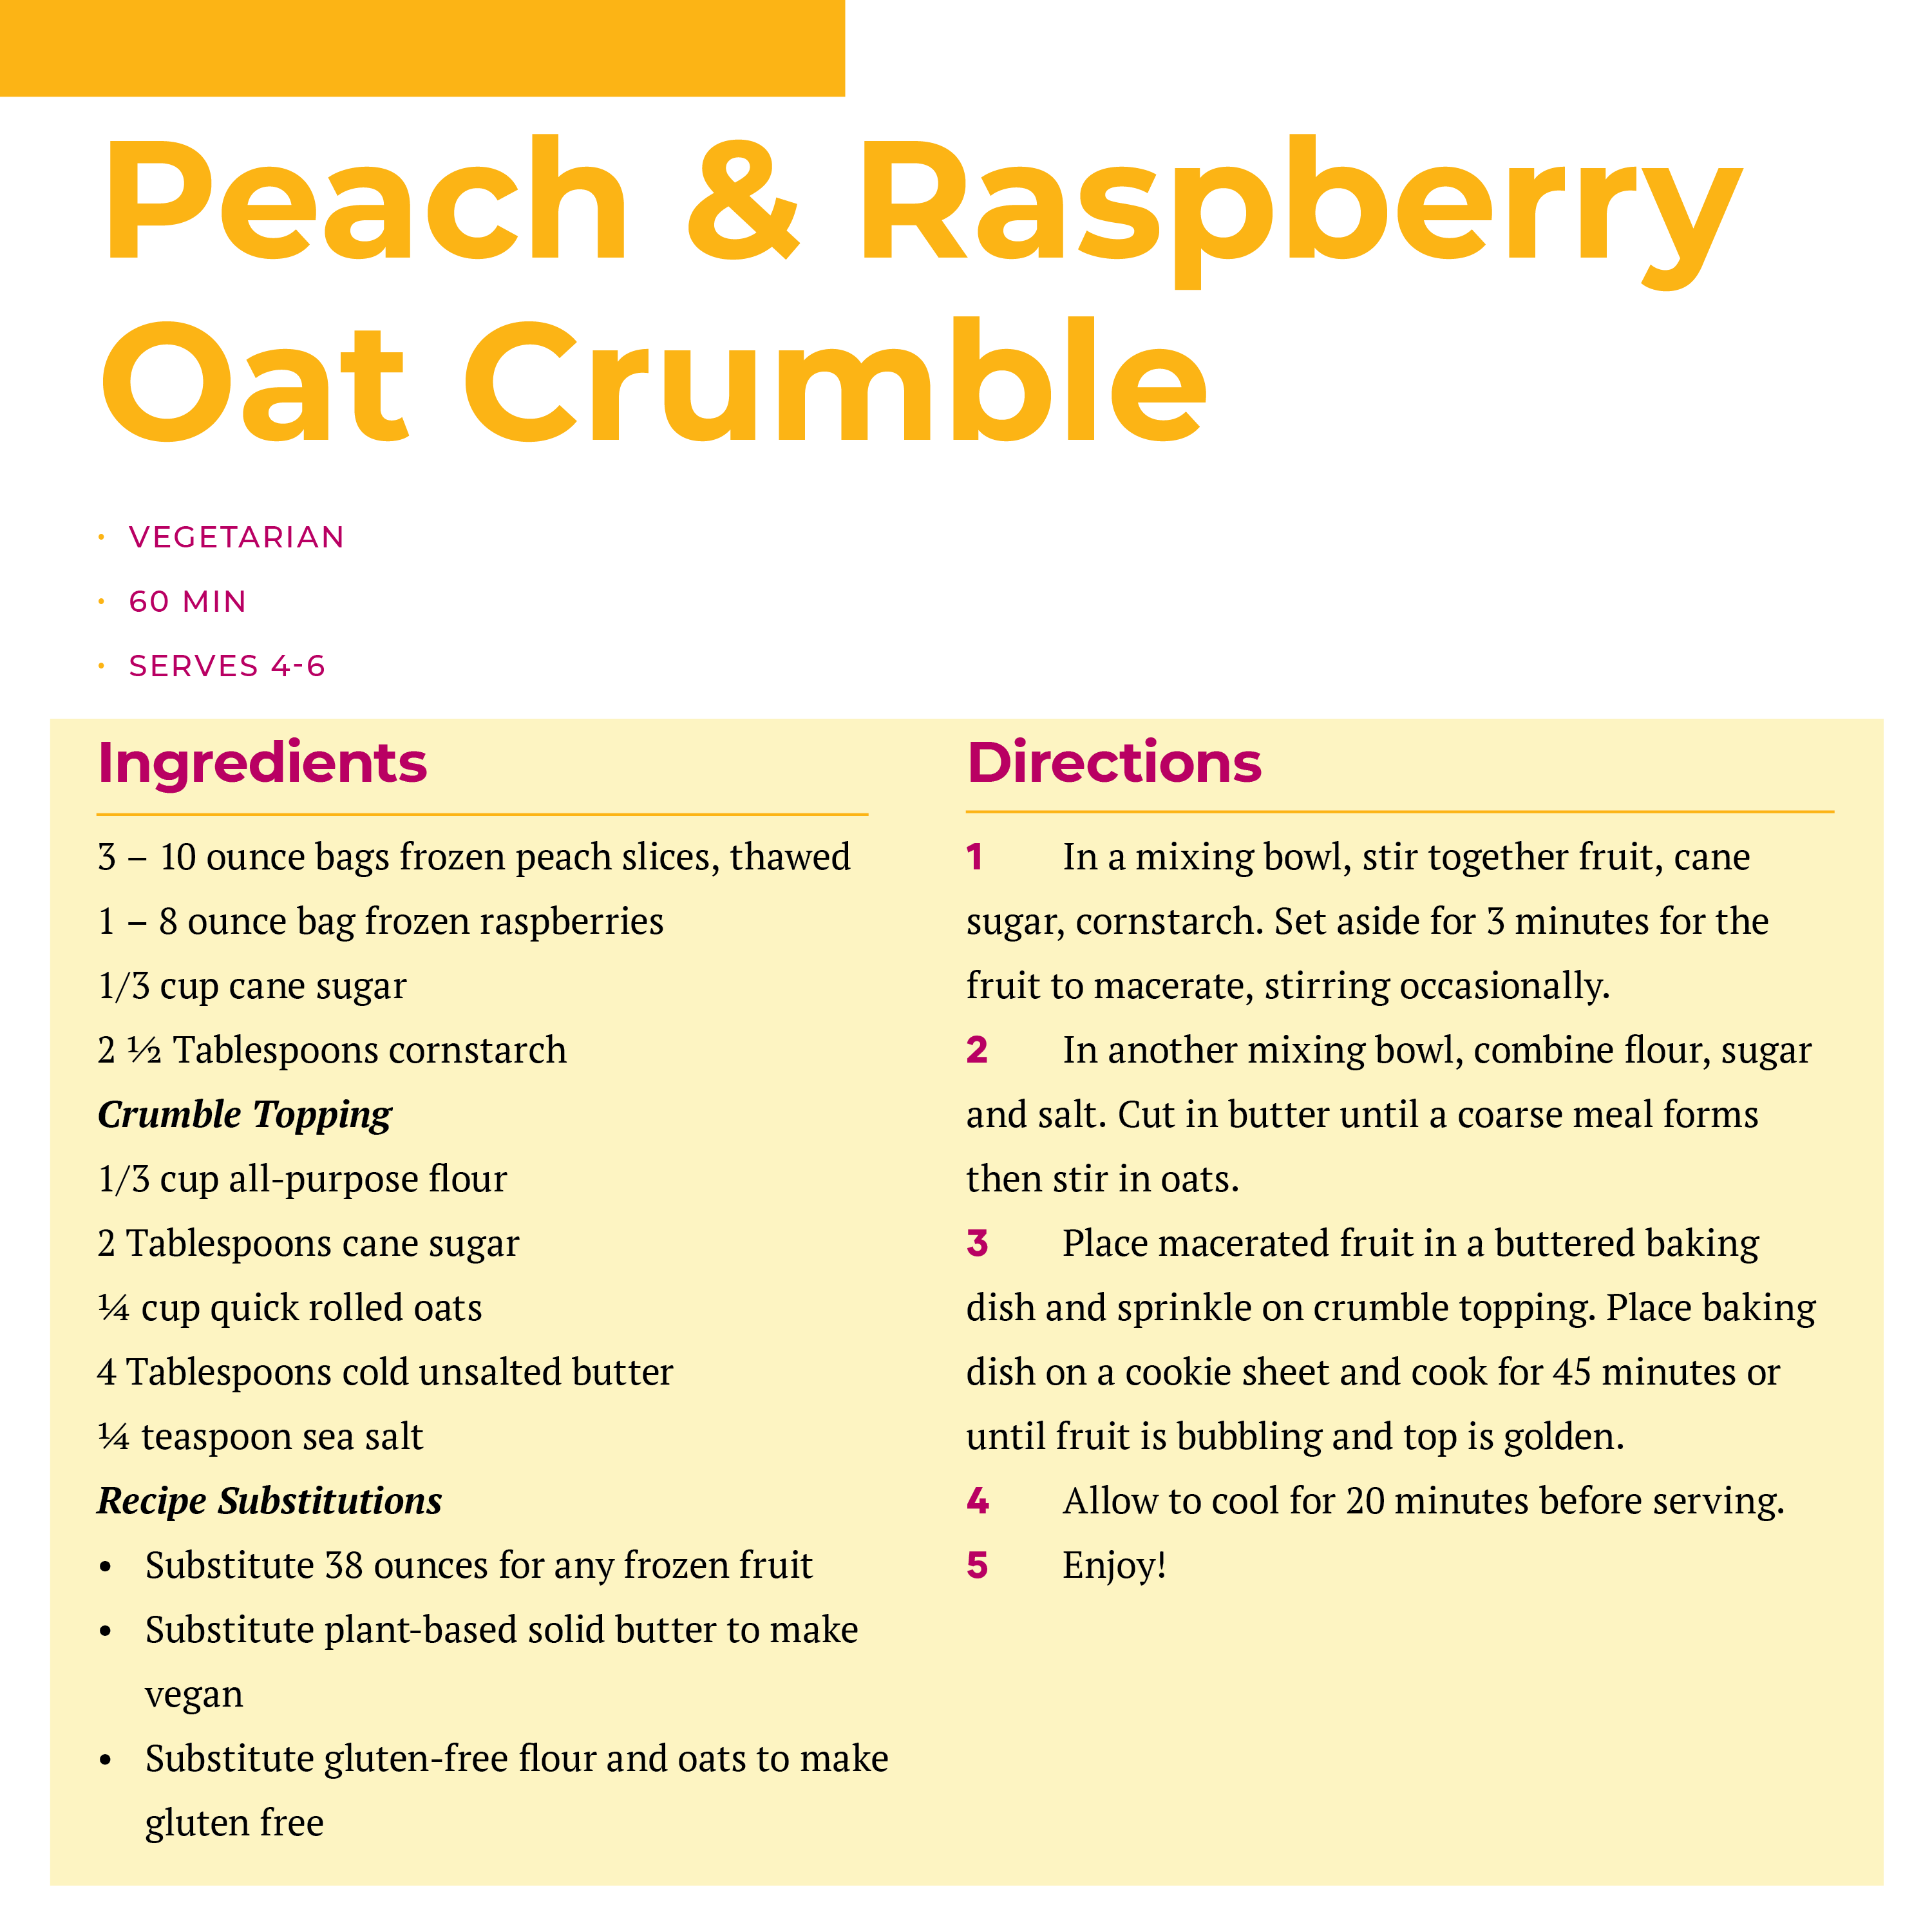 Peach & Raspberry Oat Crumble